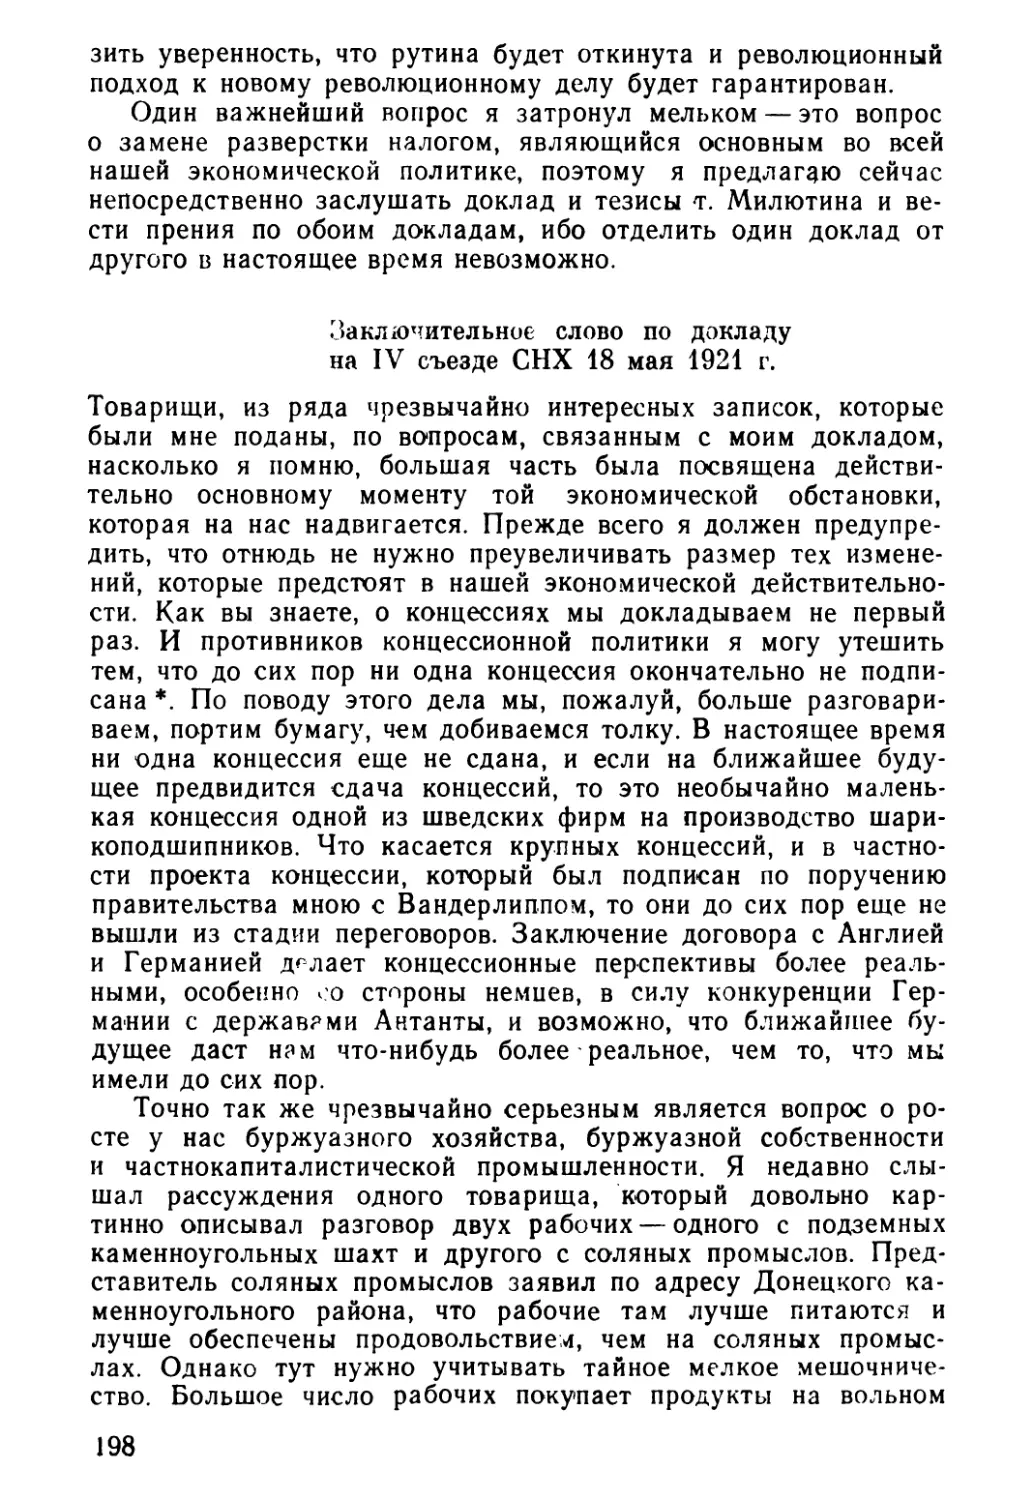 Заключительное слово по докладу на IV съезде СНХ 18 мая 1921 г.